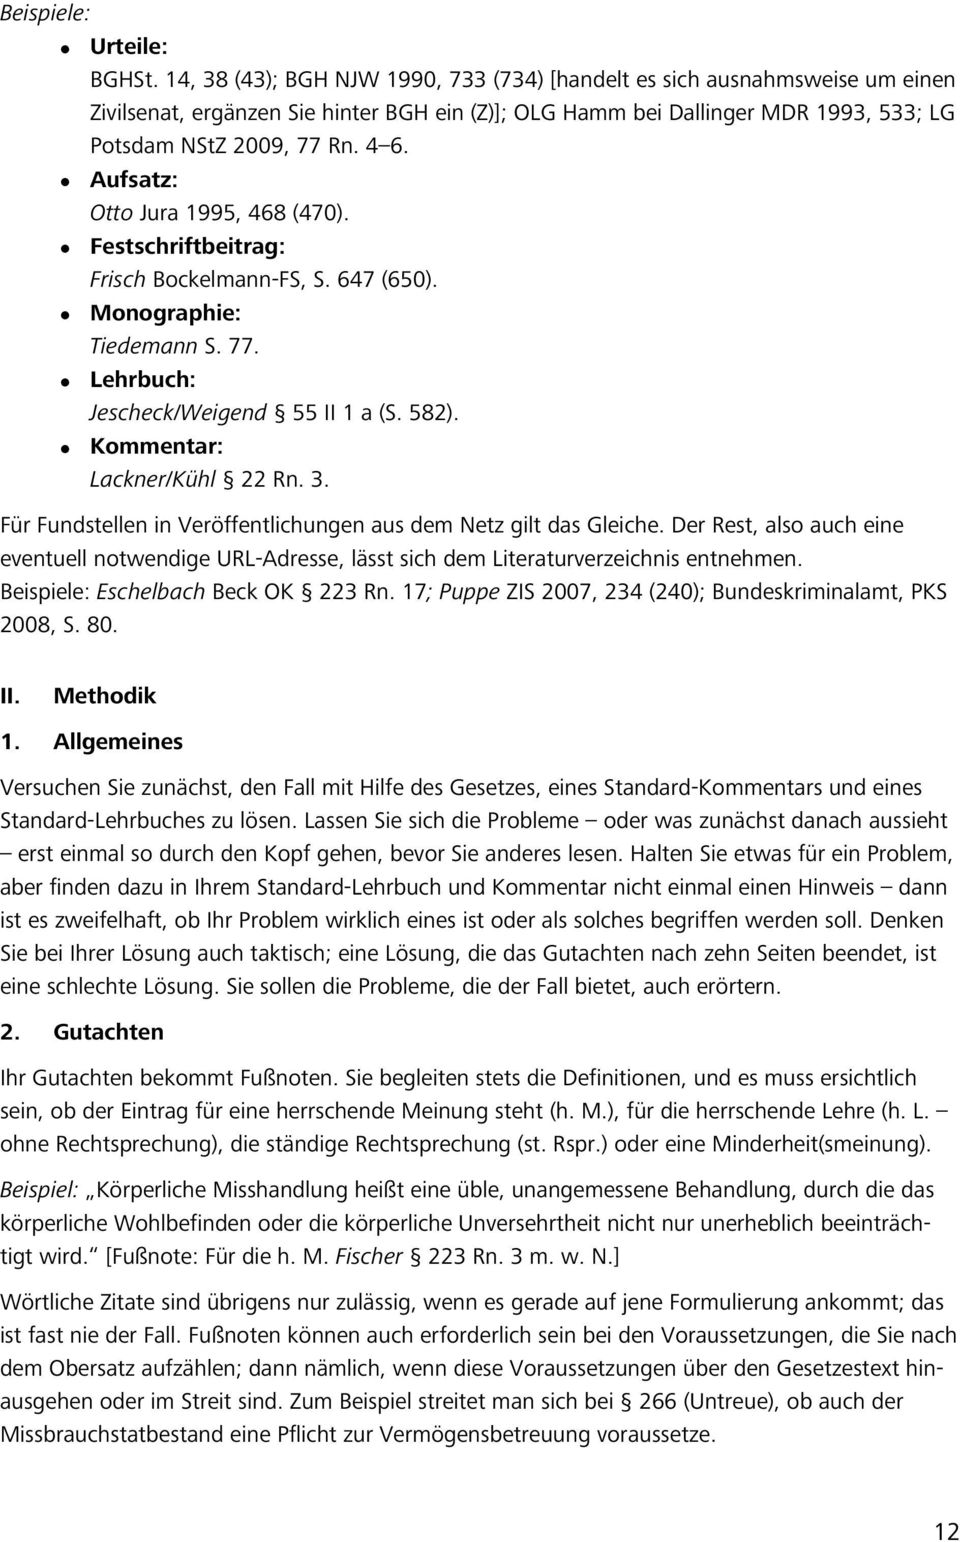 Aufsatz: Otto Jura 1995, 468 (470). Festschriftbeitrag: Frisch Bockelmann-FS, S. 647 (650). Monographie: Tiedemann S. 77. Lehrbuch: Jescheck/Weigend 55 II 1 a (S. 582). Kommentar: Lackner/Kühl 22 Rn.